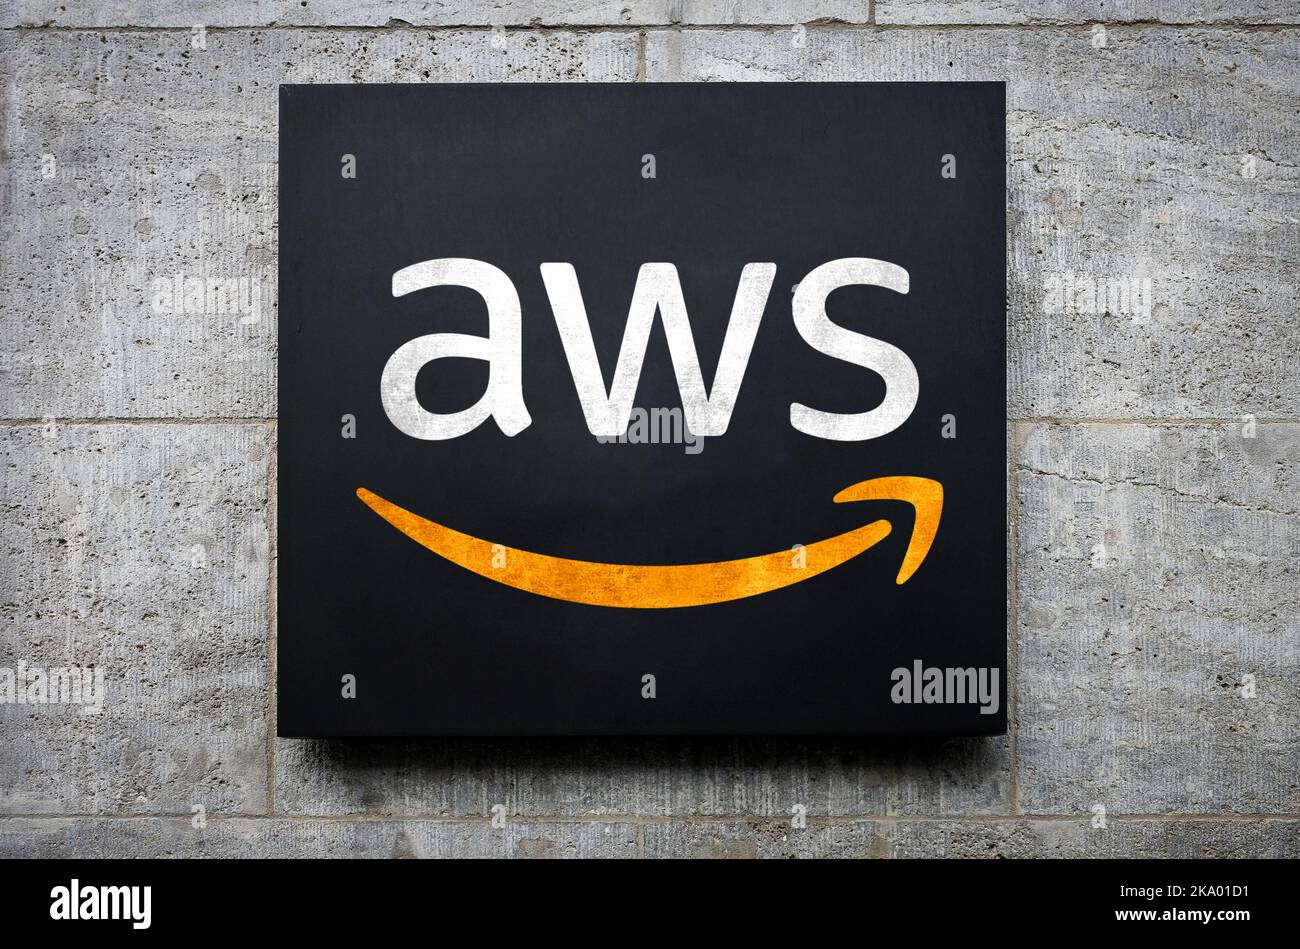 AWS - Amazon Web Services Stock Photo